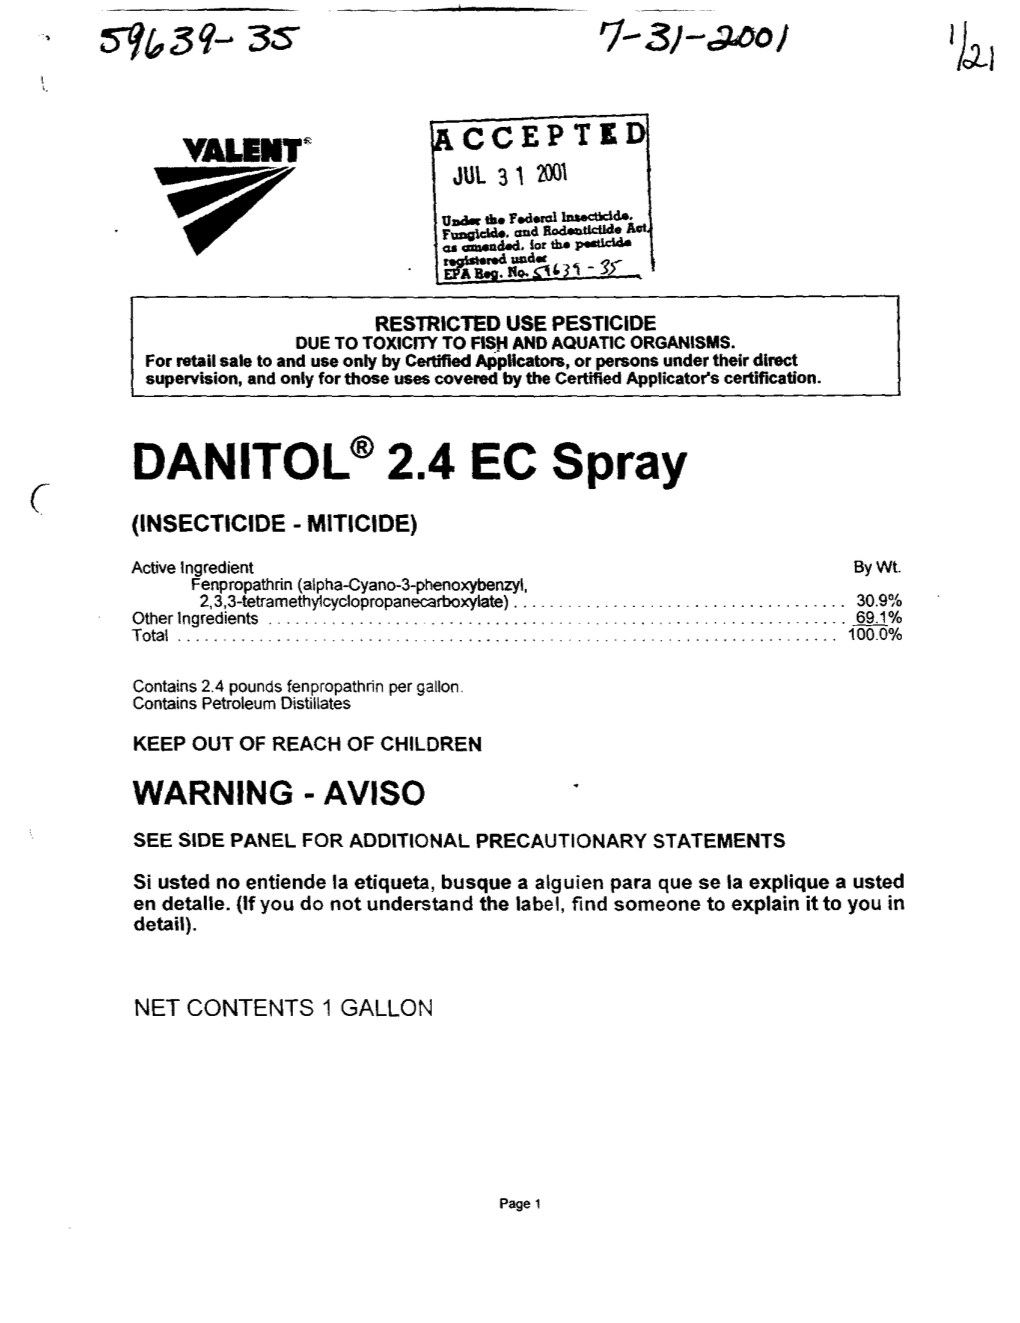 U.S. EPA, Pesticide Product Label, DANITOL 2.4 EC SPRAY, 07/31/2001